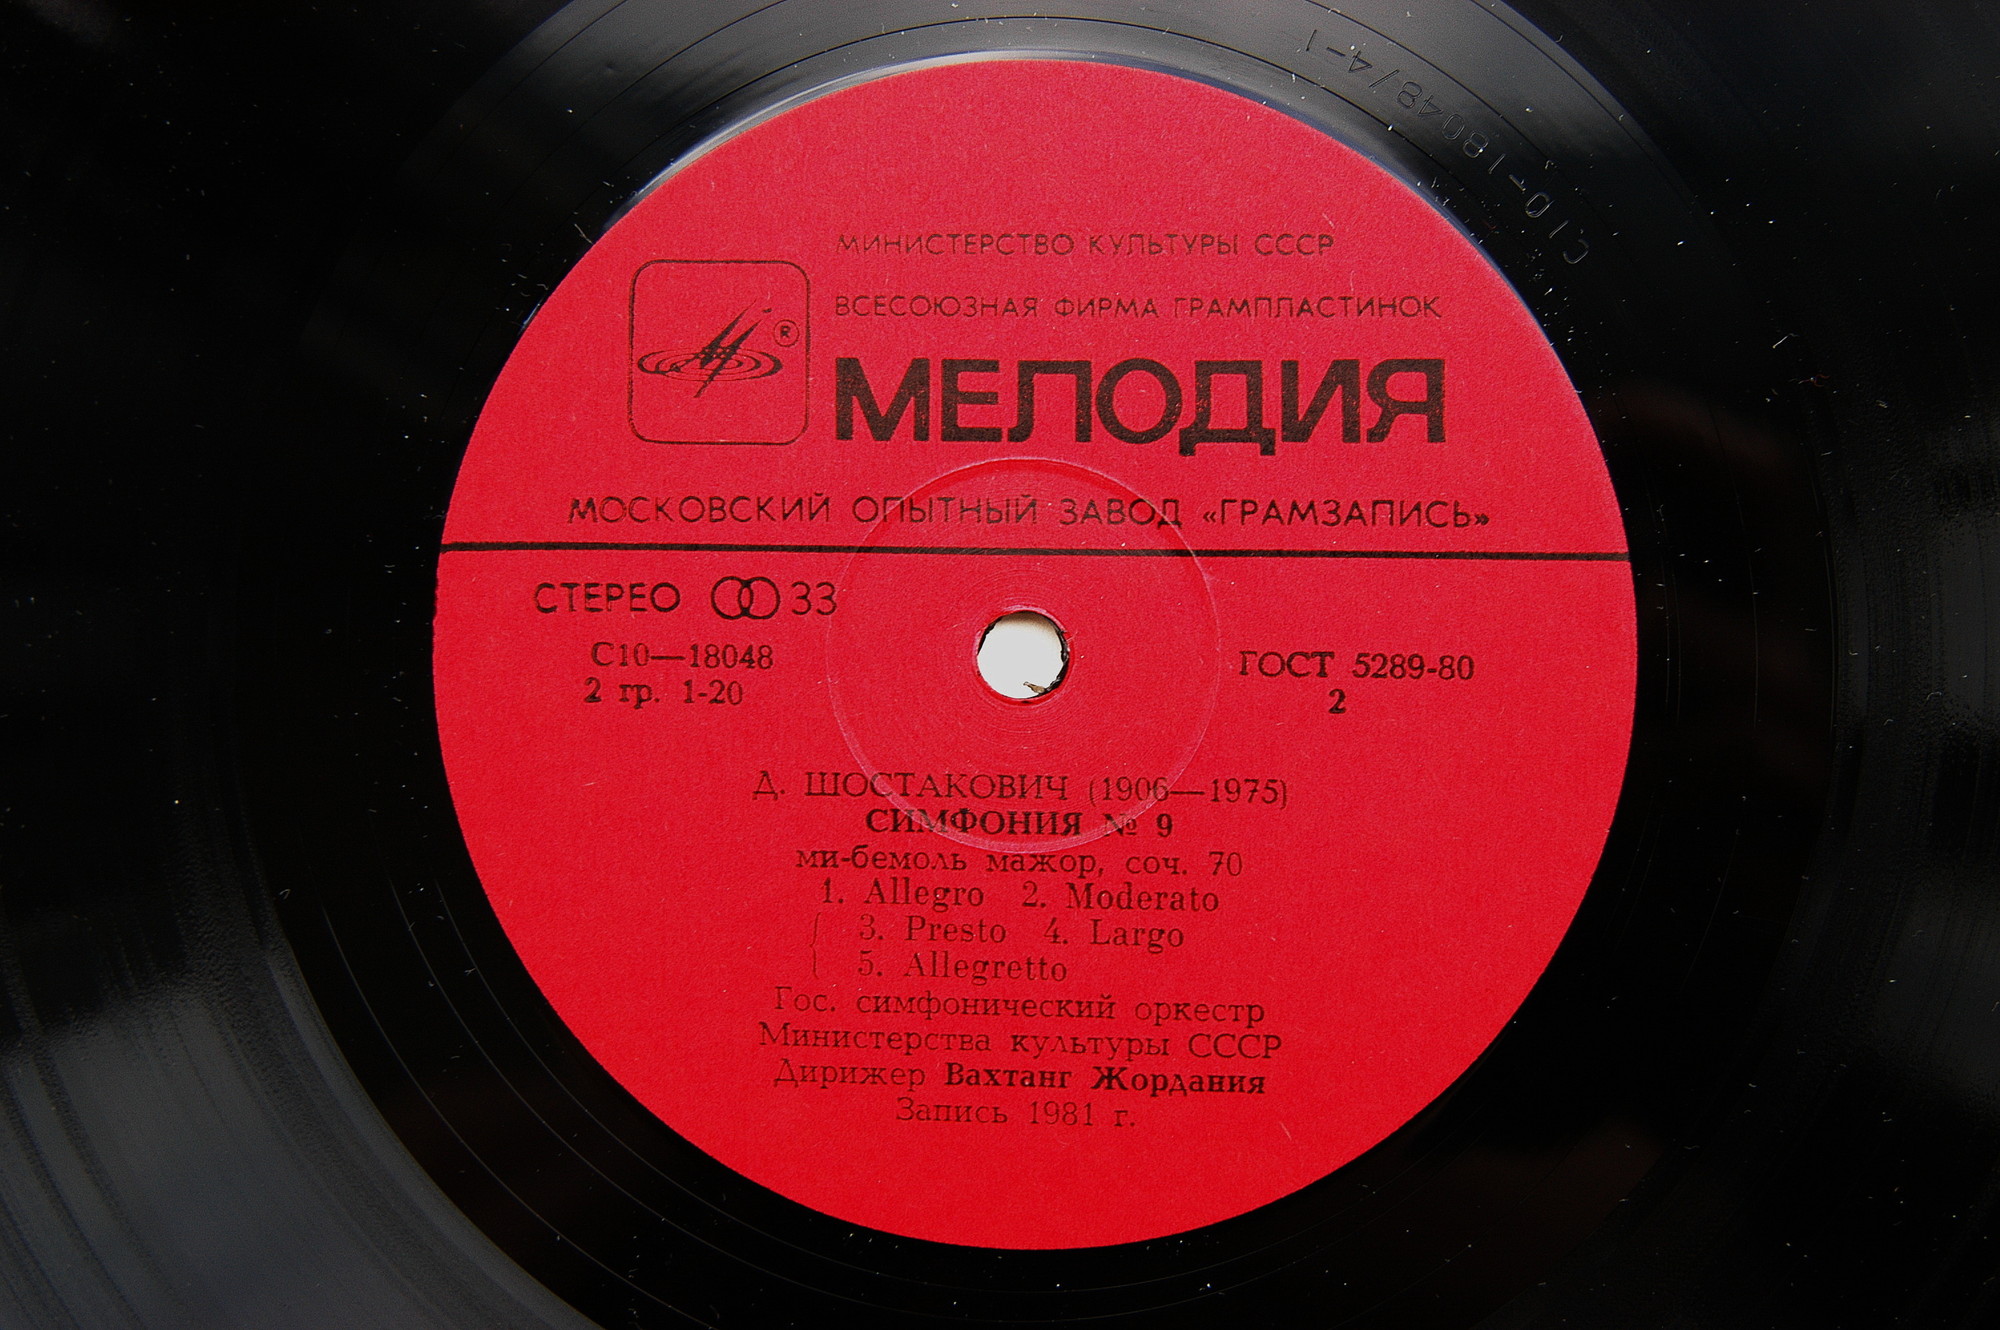 Д. ШОСТАКОВИЧ (1906-1975) Симфонии № 6, 9 (В. Жордания)